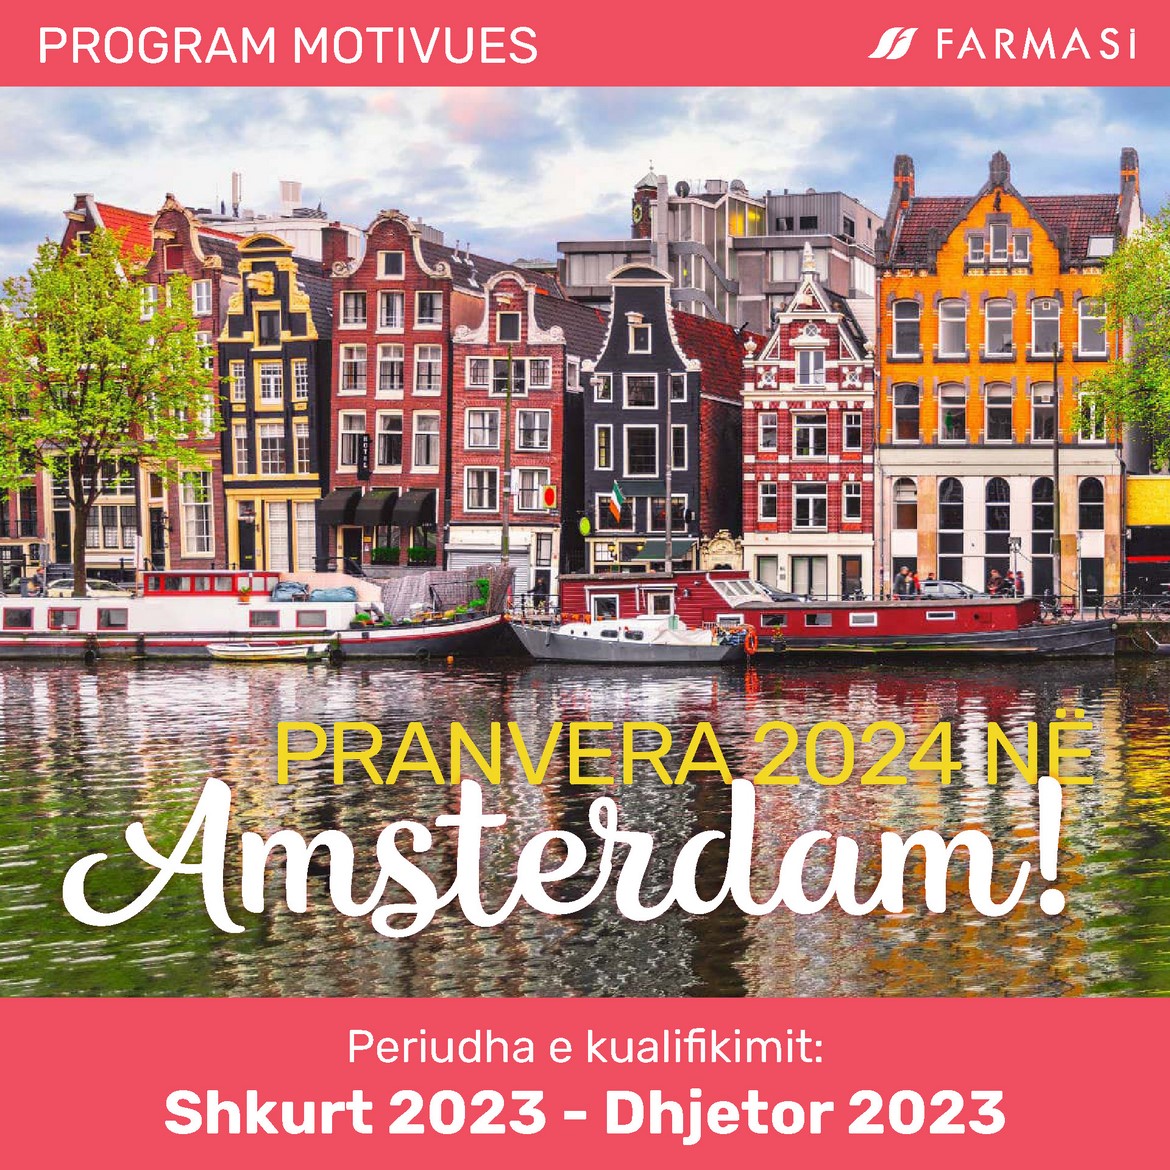 PRANVERA 2024 NË Amsterdam!